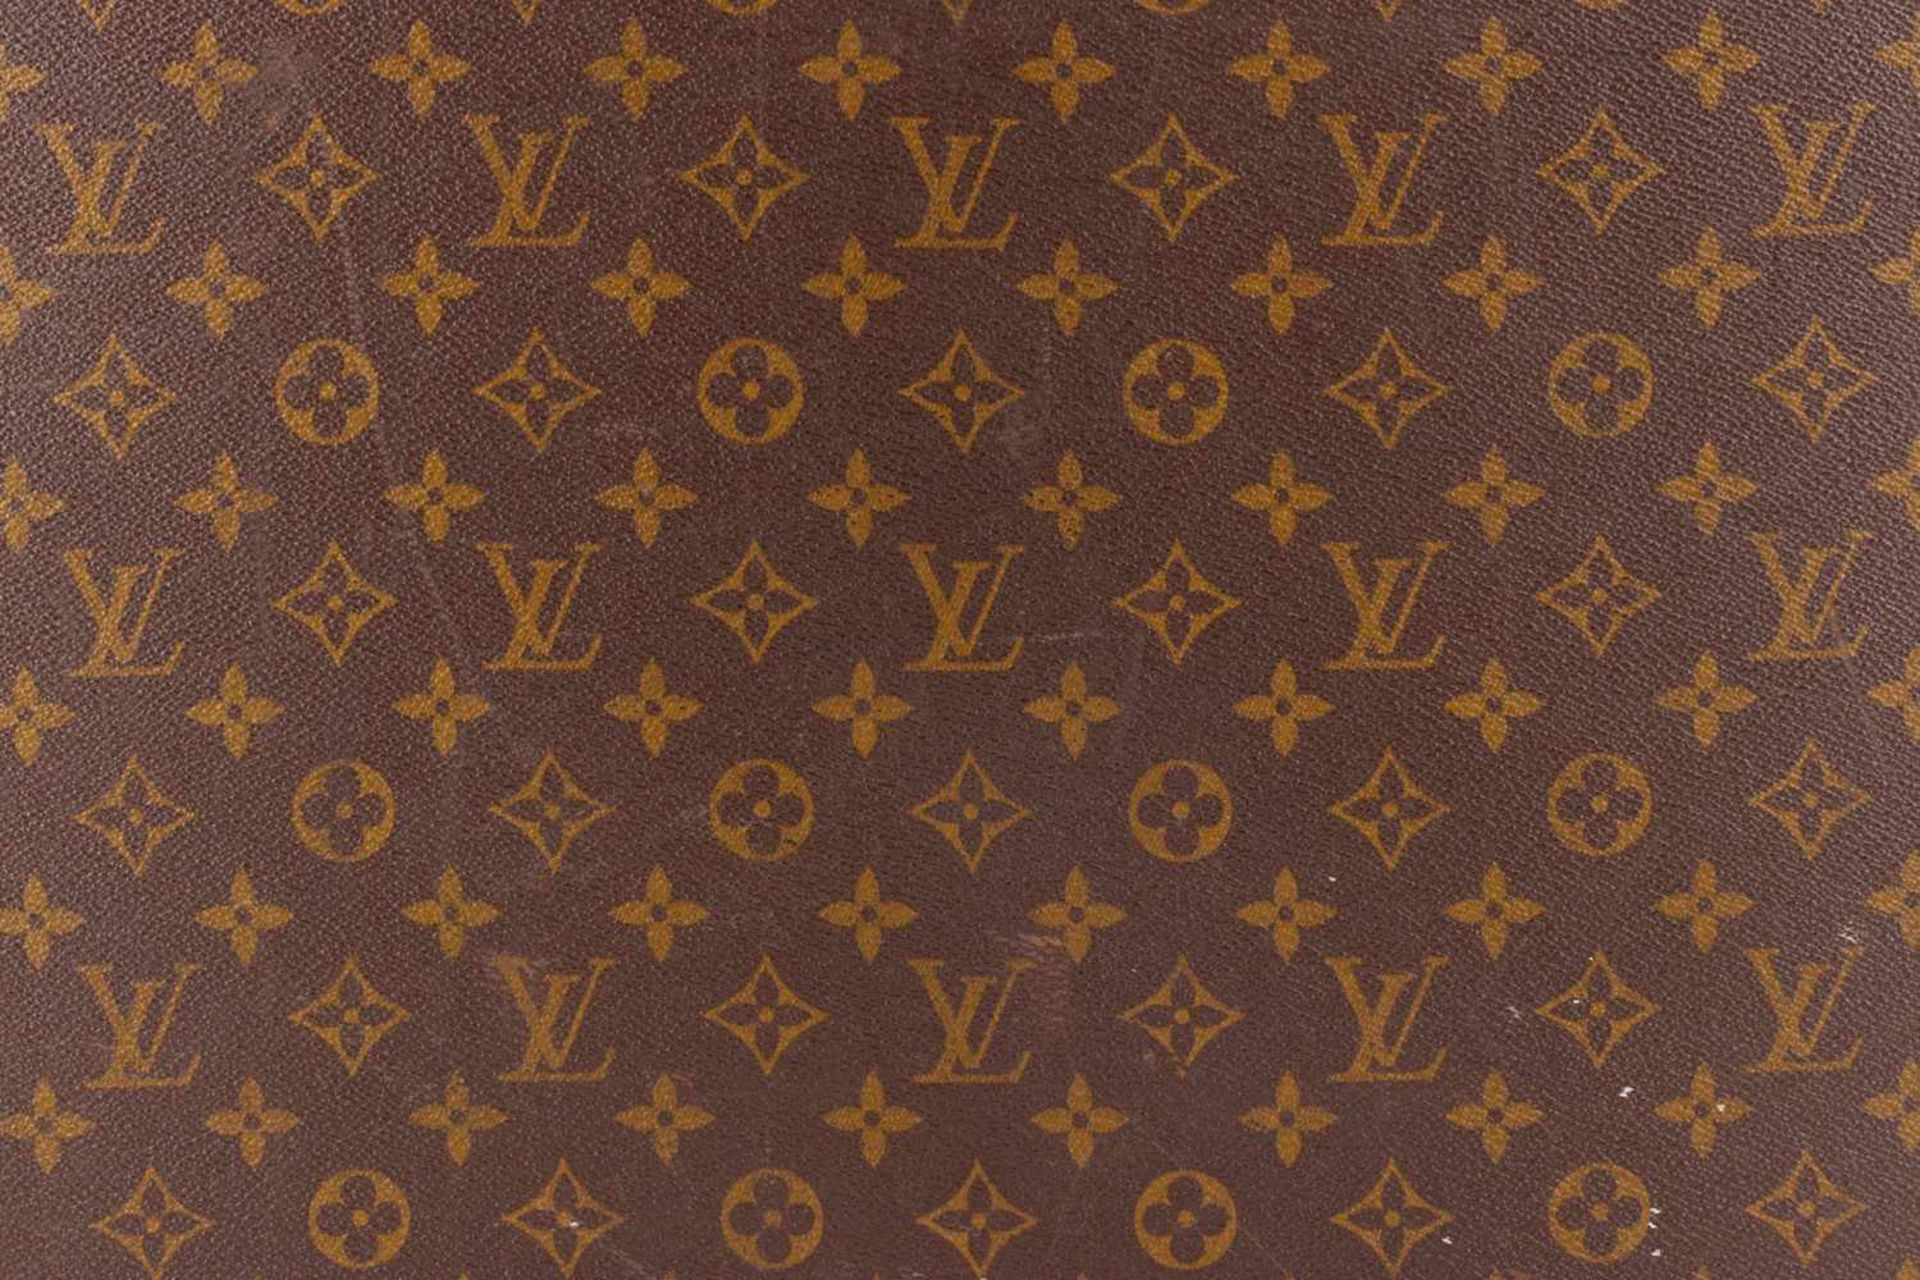 Kleiner Louis Vuitton Koffer, mit Ledergriff, 2 Schließen und Schloss, Gebrauchsspuren, Länge 43 cm- - Bild 2 aus 5